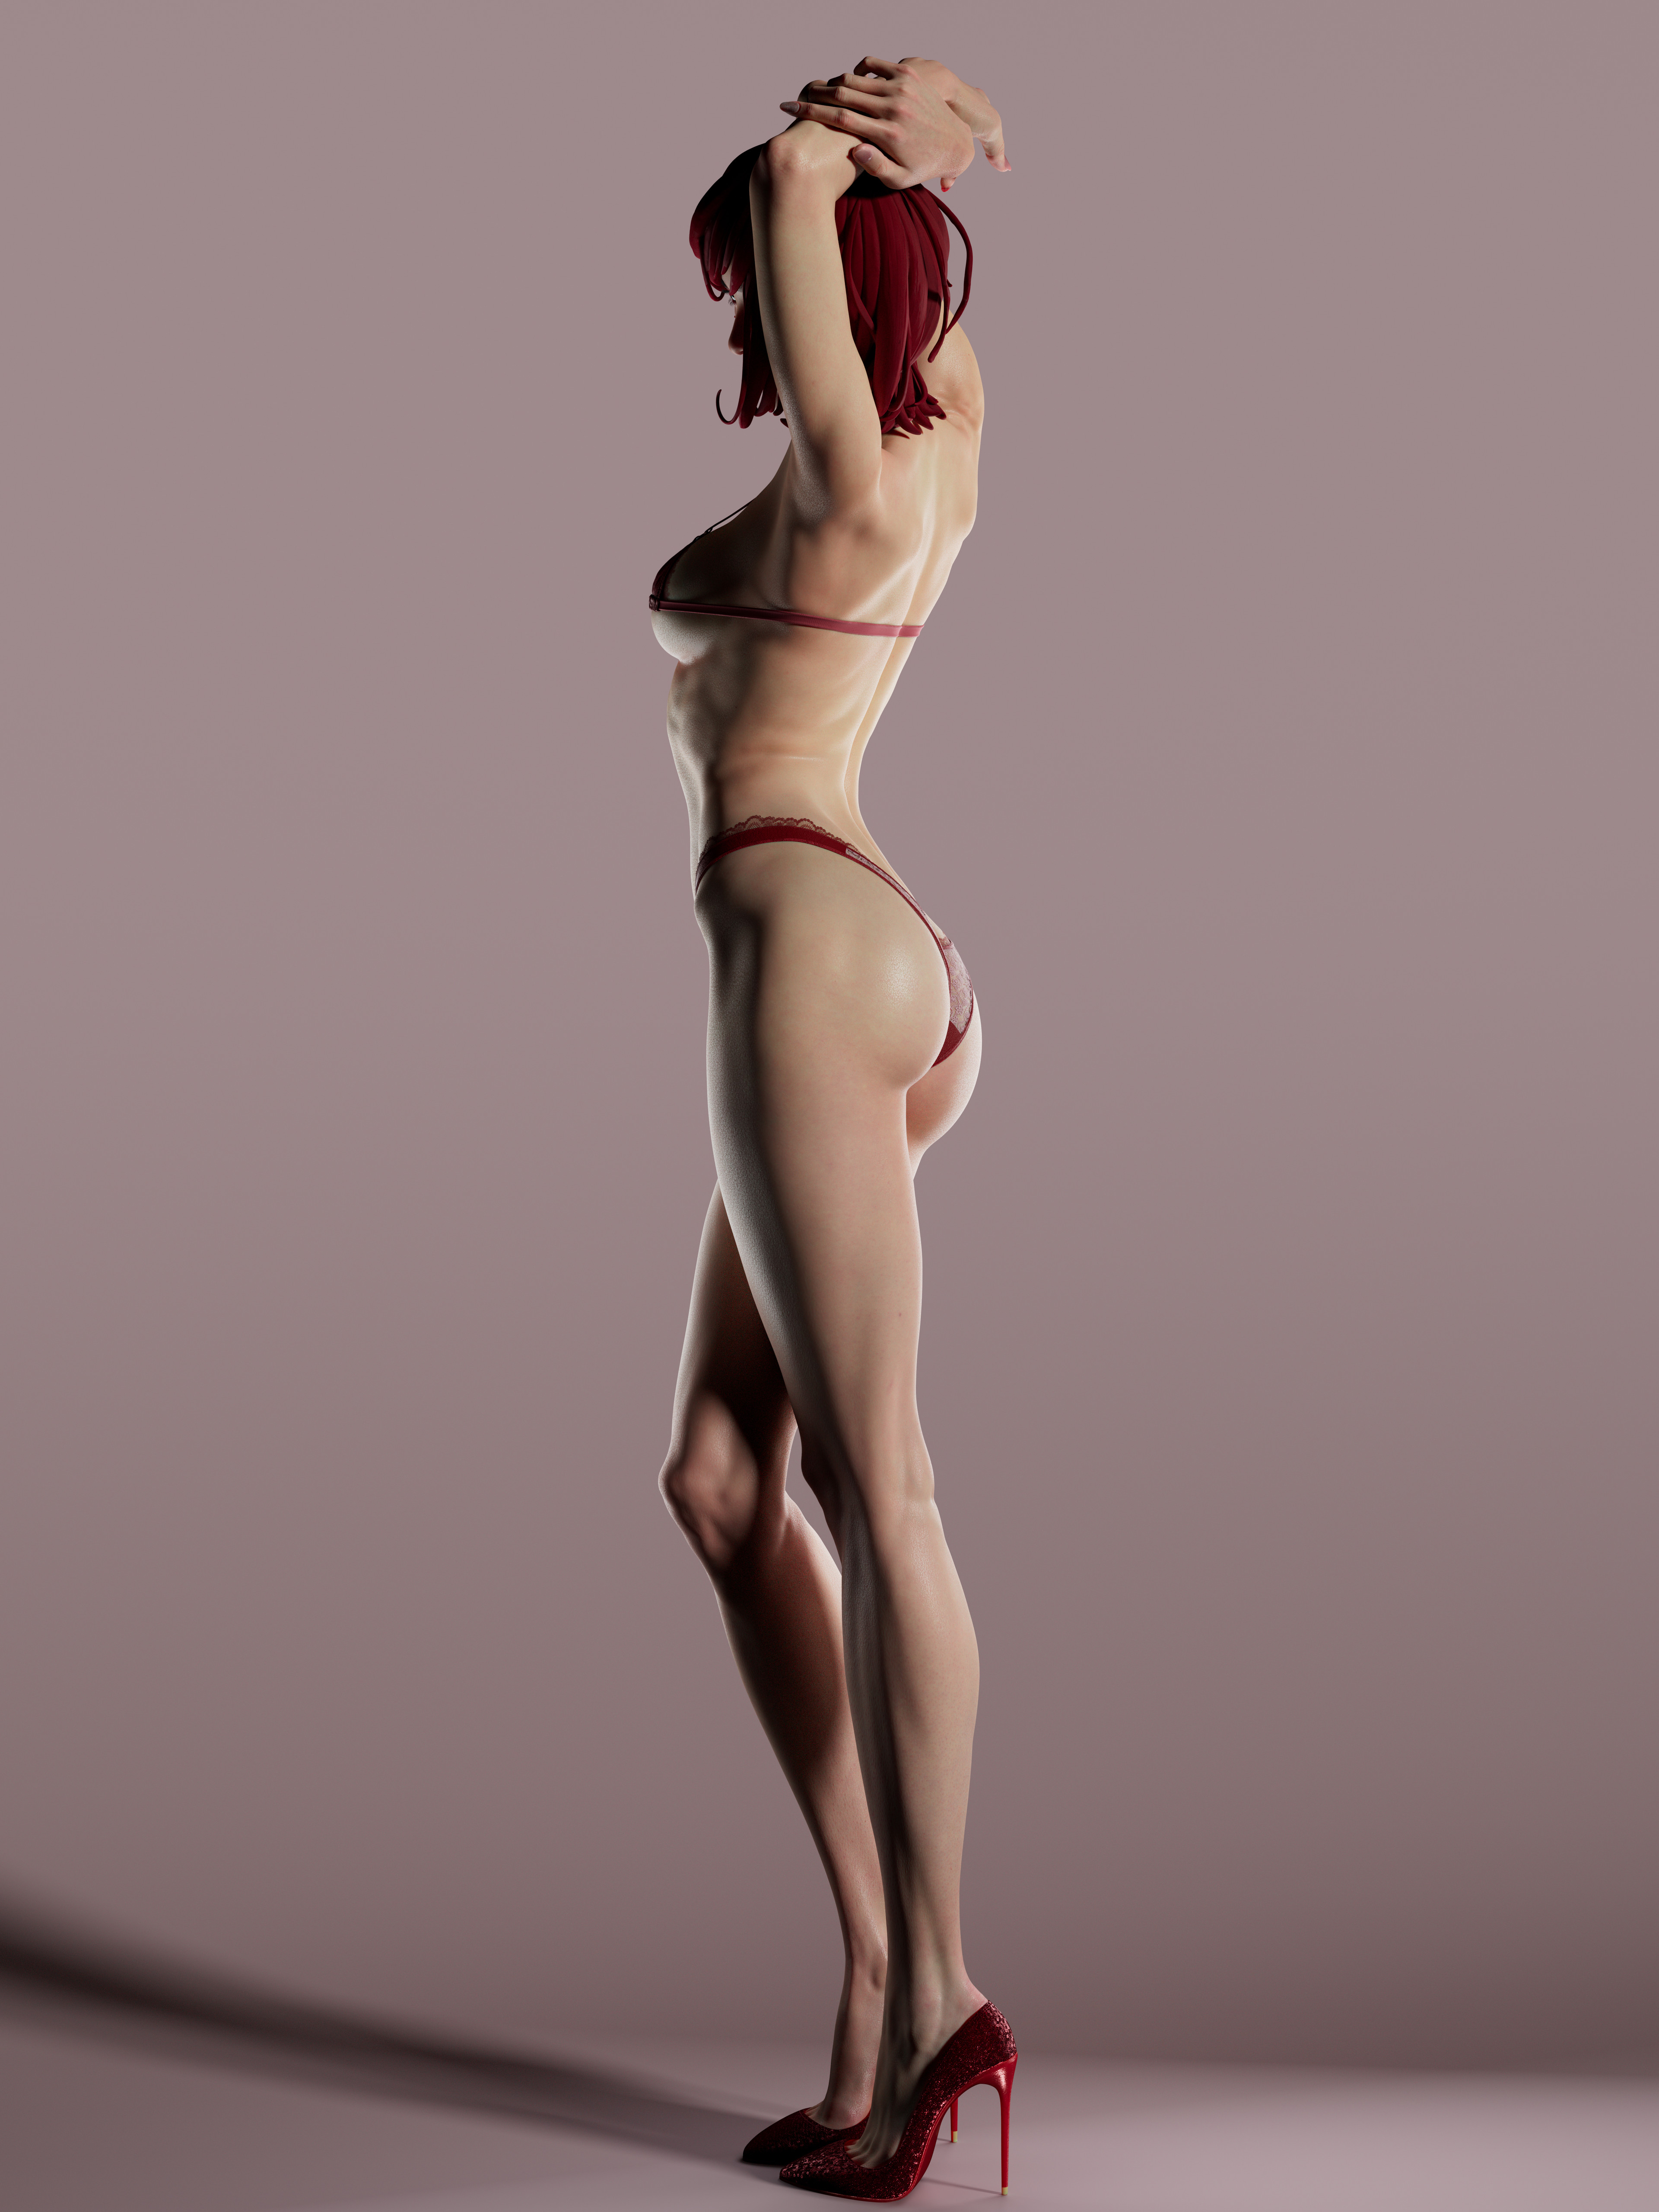 General 3840x5120 Shangkun Zhong CGI women redhead arms up bikini shadow shoes high heels simple background ass heels